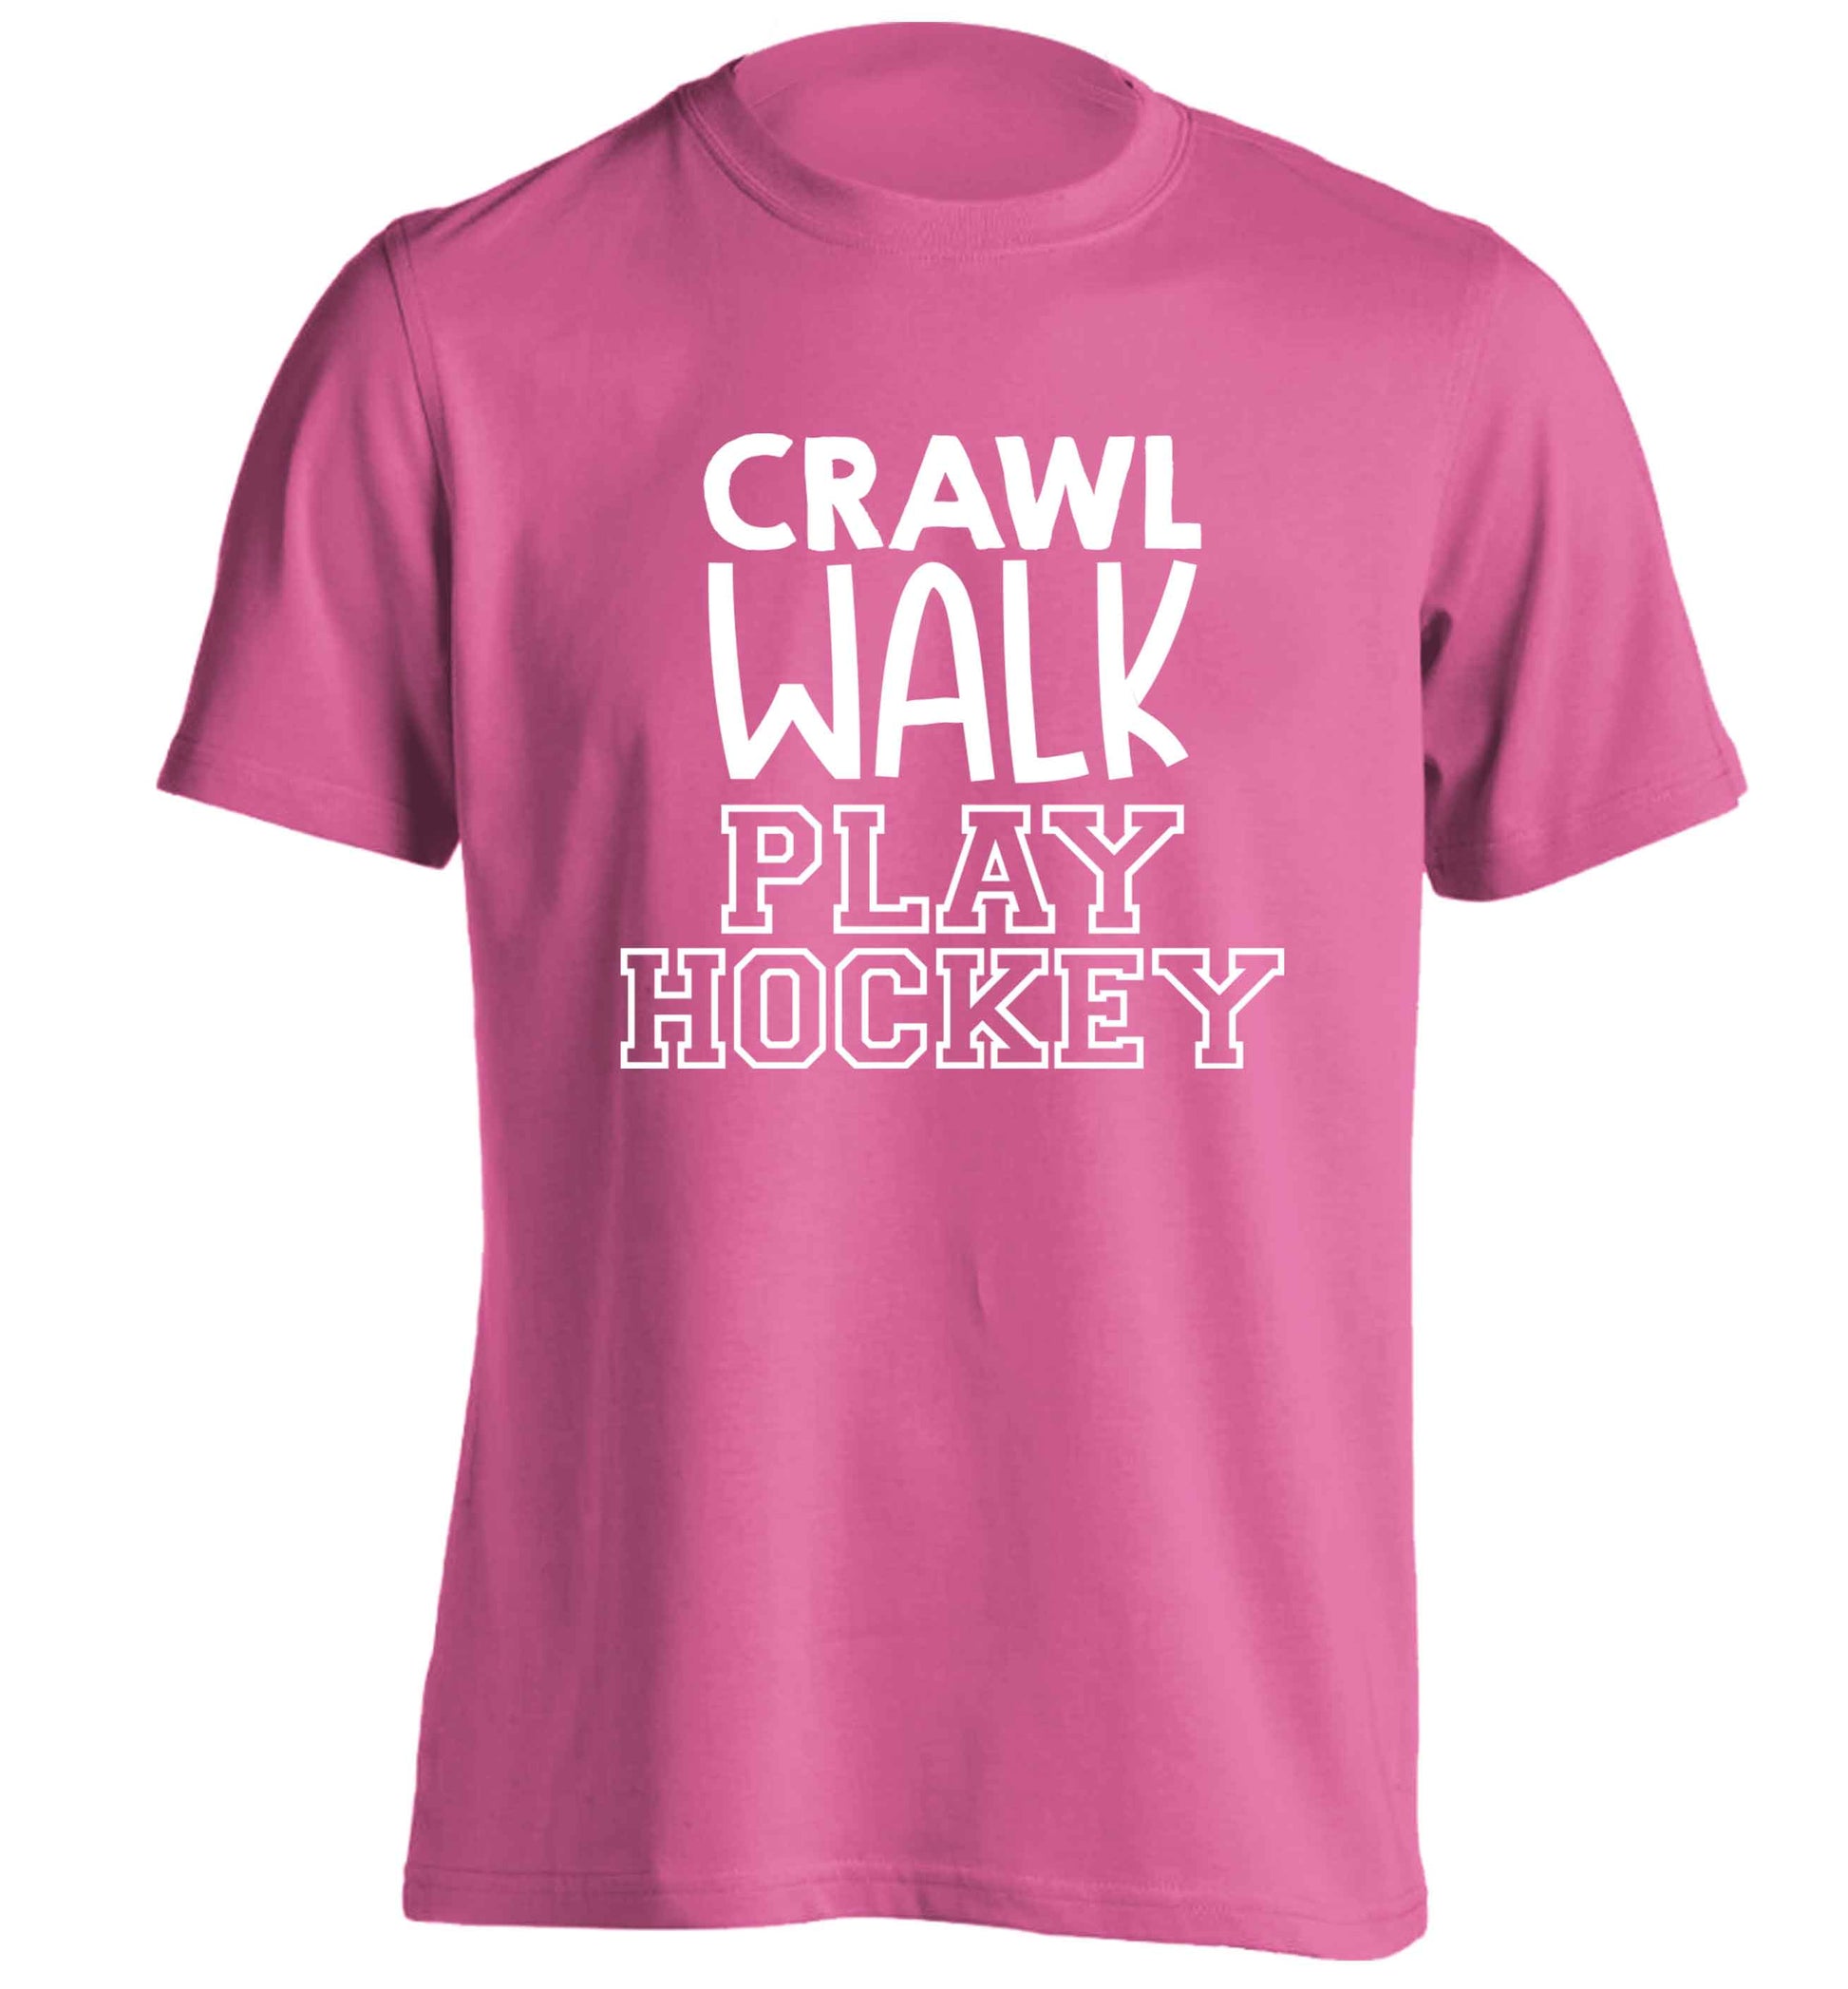 Crawl walk play hockey adults unisex pink Tshirt 2XL